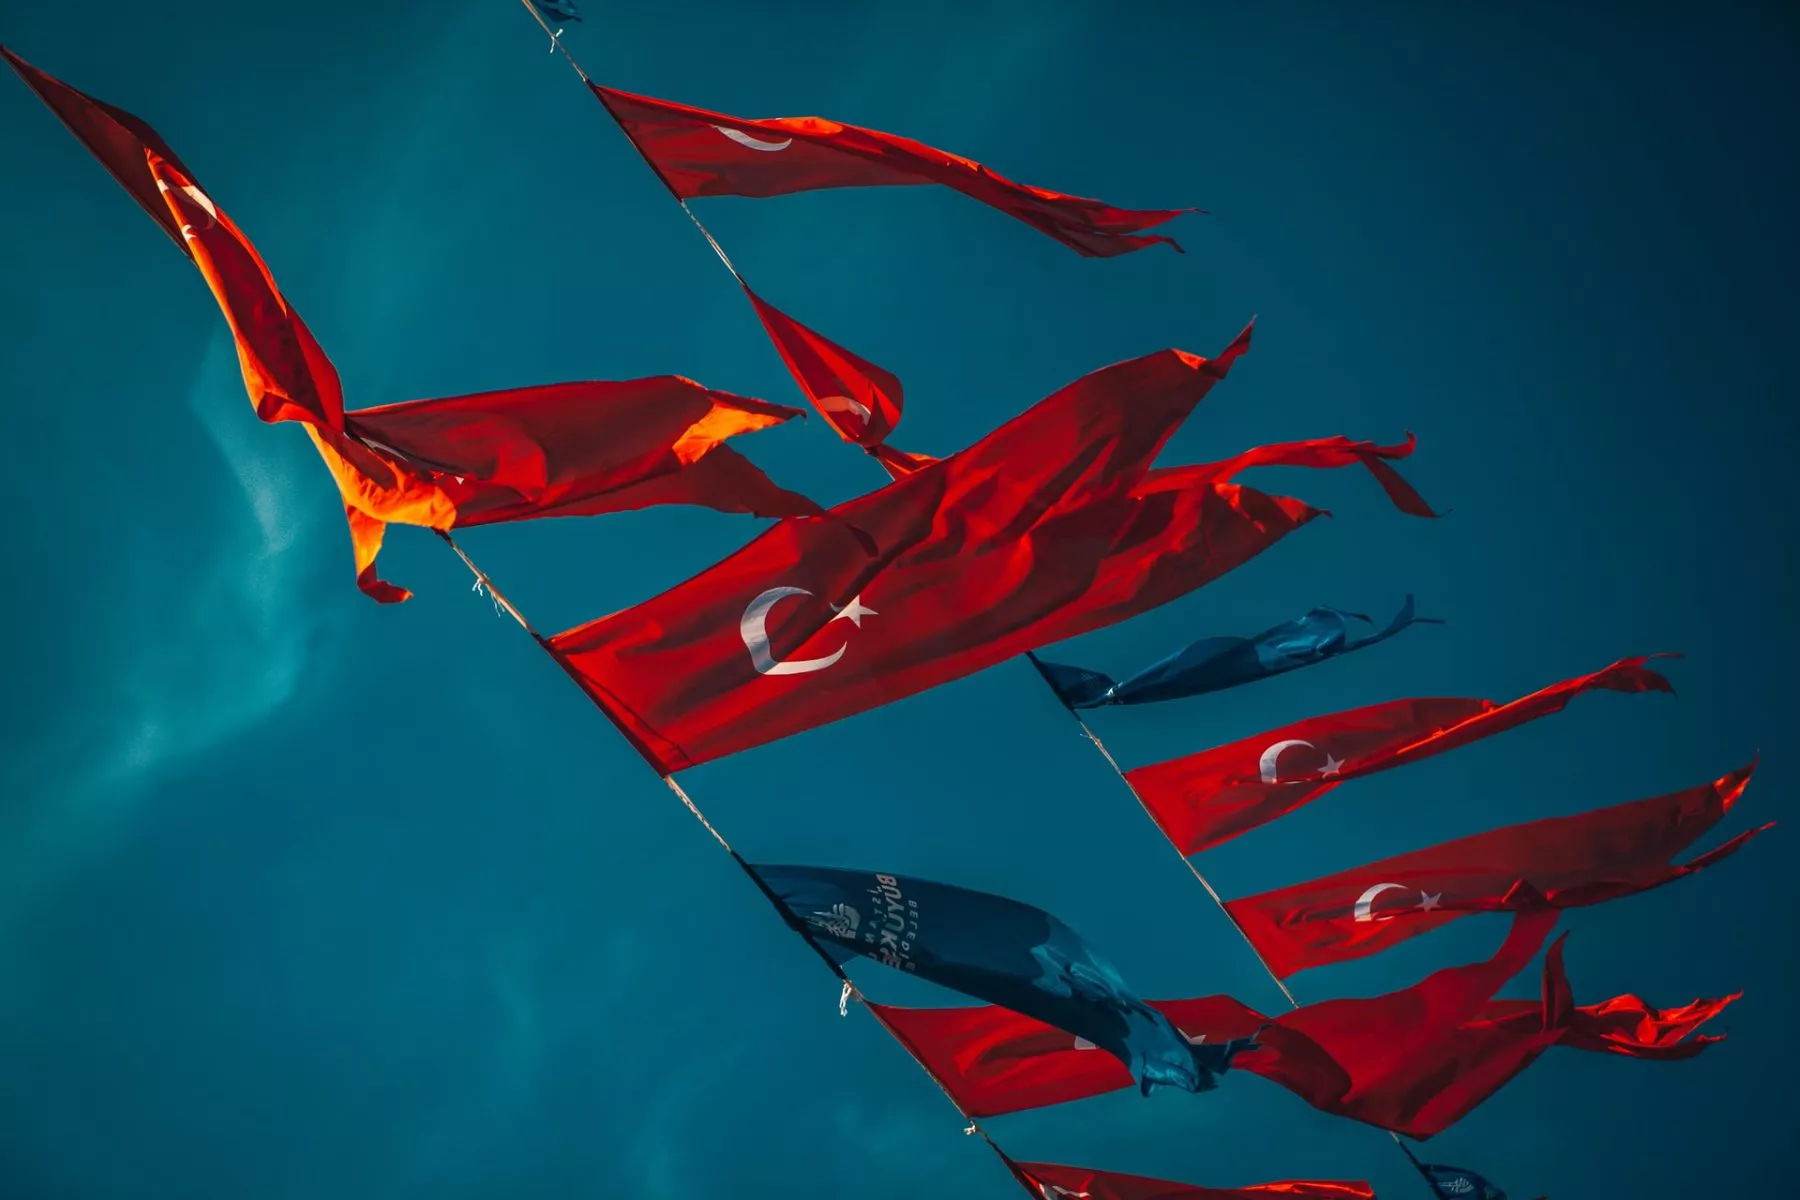 President Erdoğan: “We zijn in oorlog met crypto”